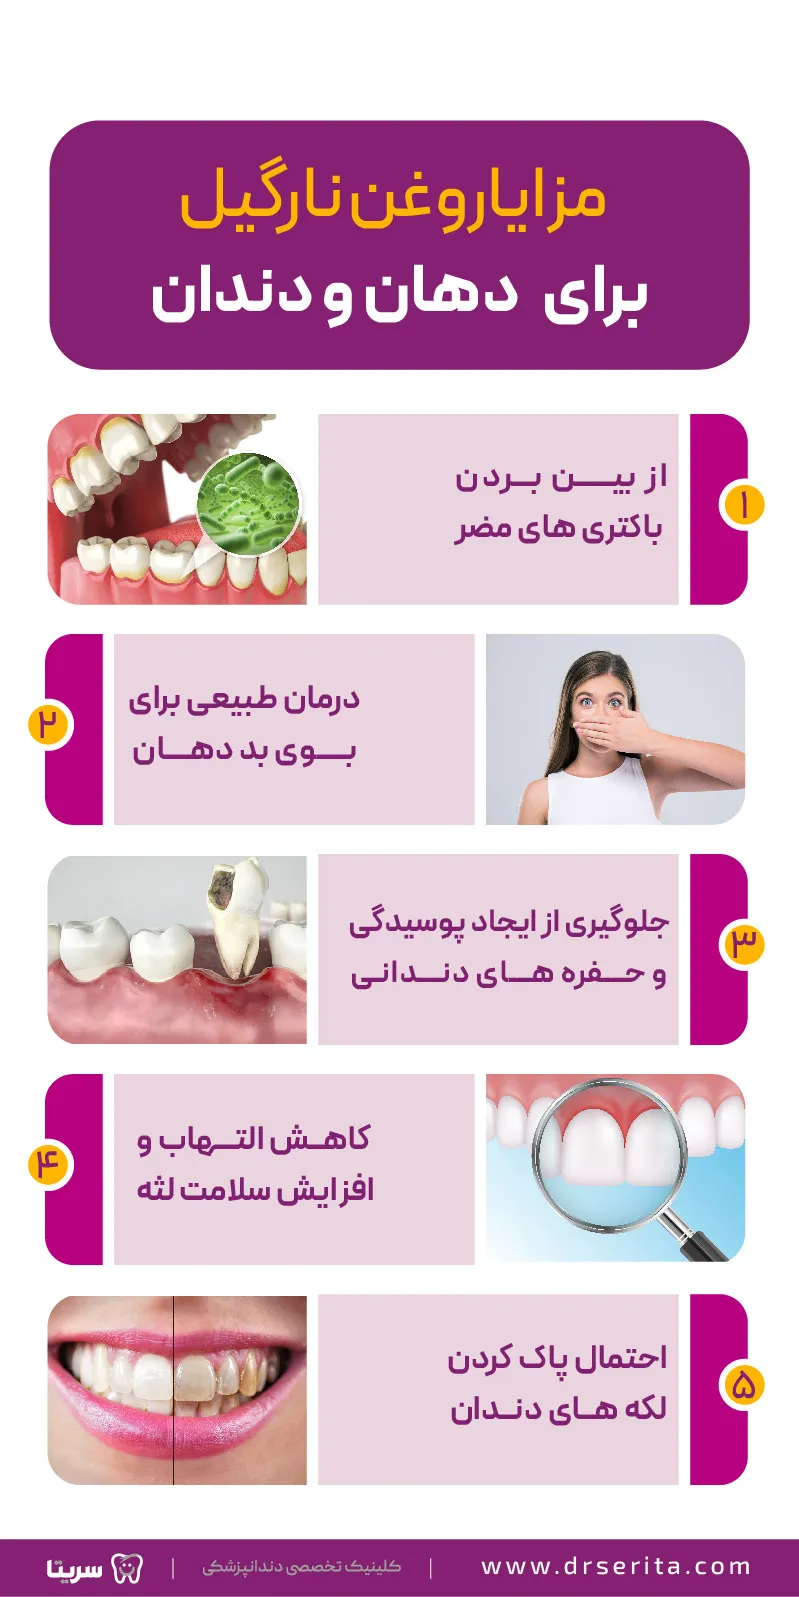 مزایای روغن نارگیل برای دهان و دندان